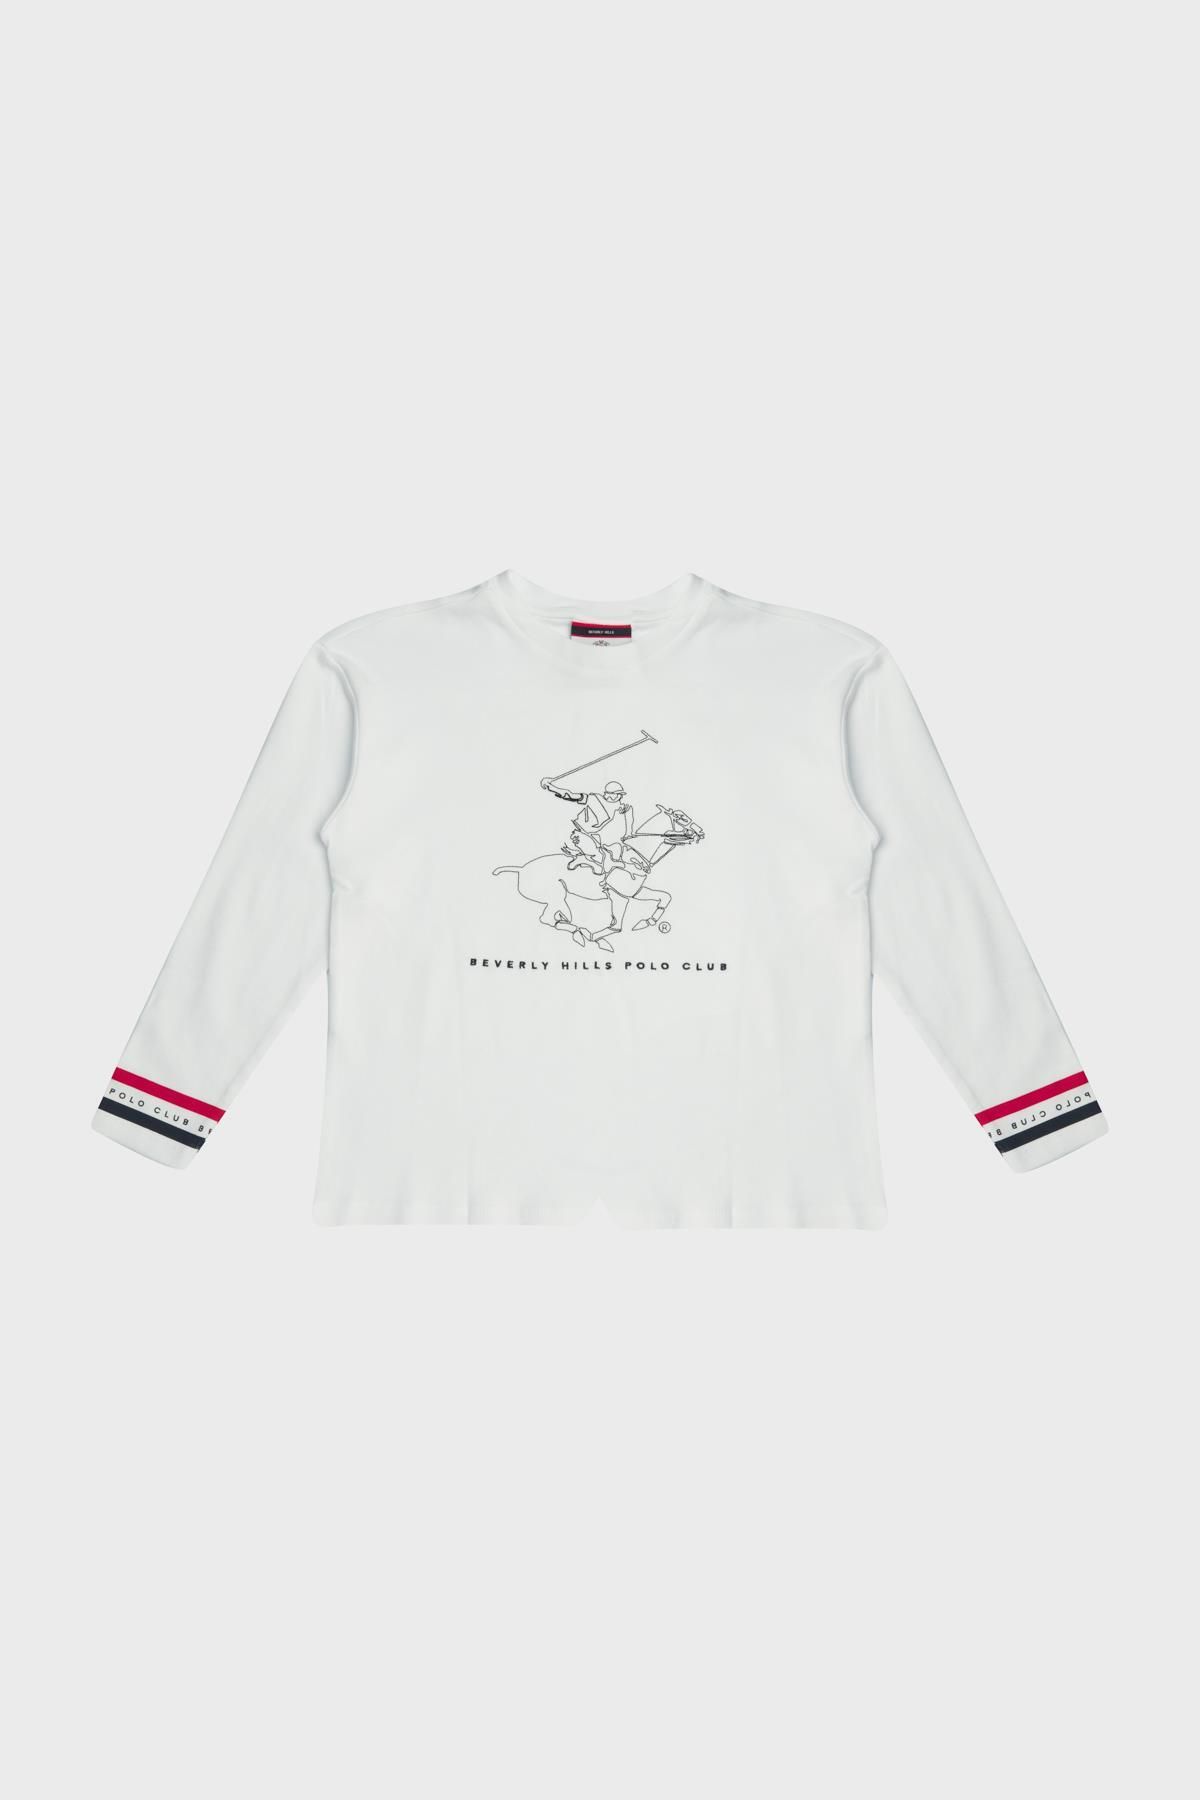 Beverly Hills Polo Club BG Store Erkek Çocuk Beyaz T-Shirt 23PFWBHB503